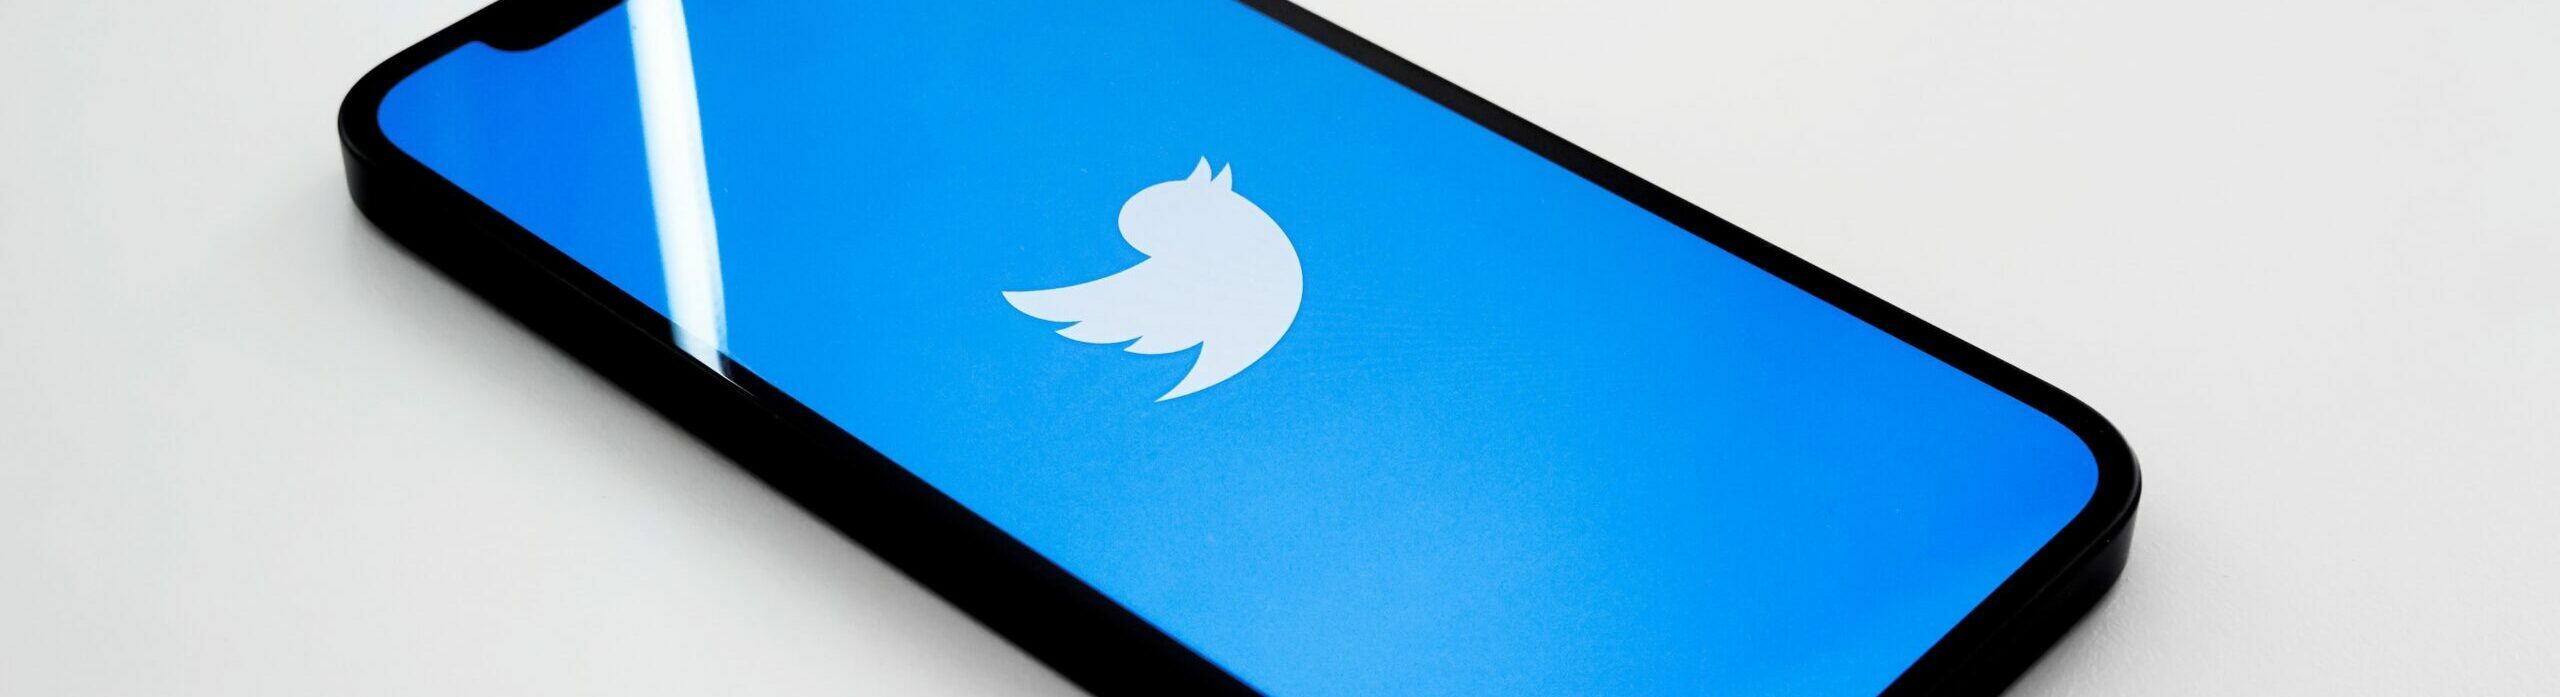 Aplicación de Twitter en un smartphone